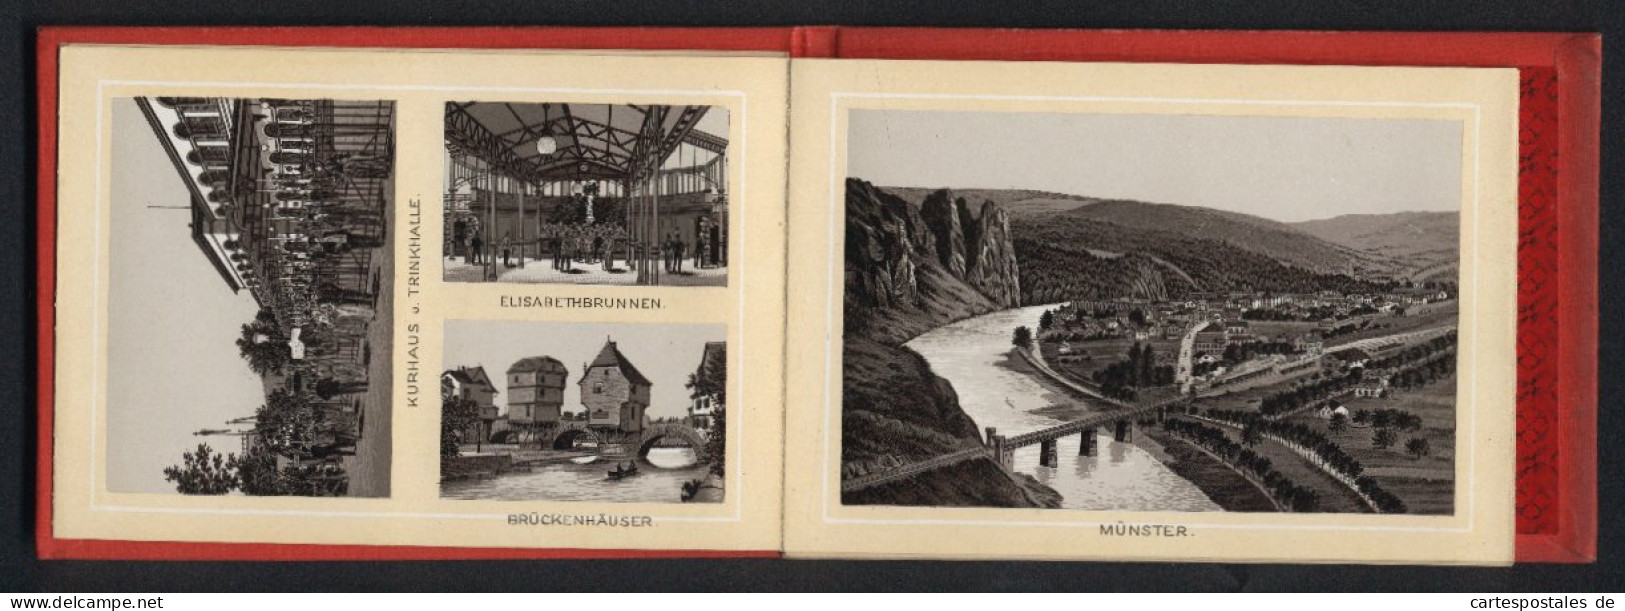 Leporello-Album Nahethal Mit 17 Lithographie-Ansichten, Idar, Oberstein, Kirn, Schloss Dhaun, Ebernburg, Münster, Bin  - Lithografieën